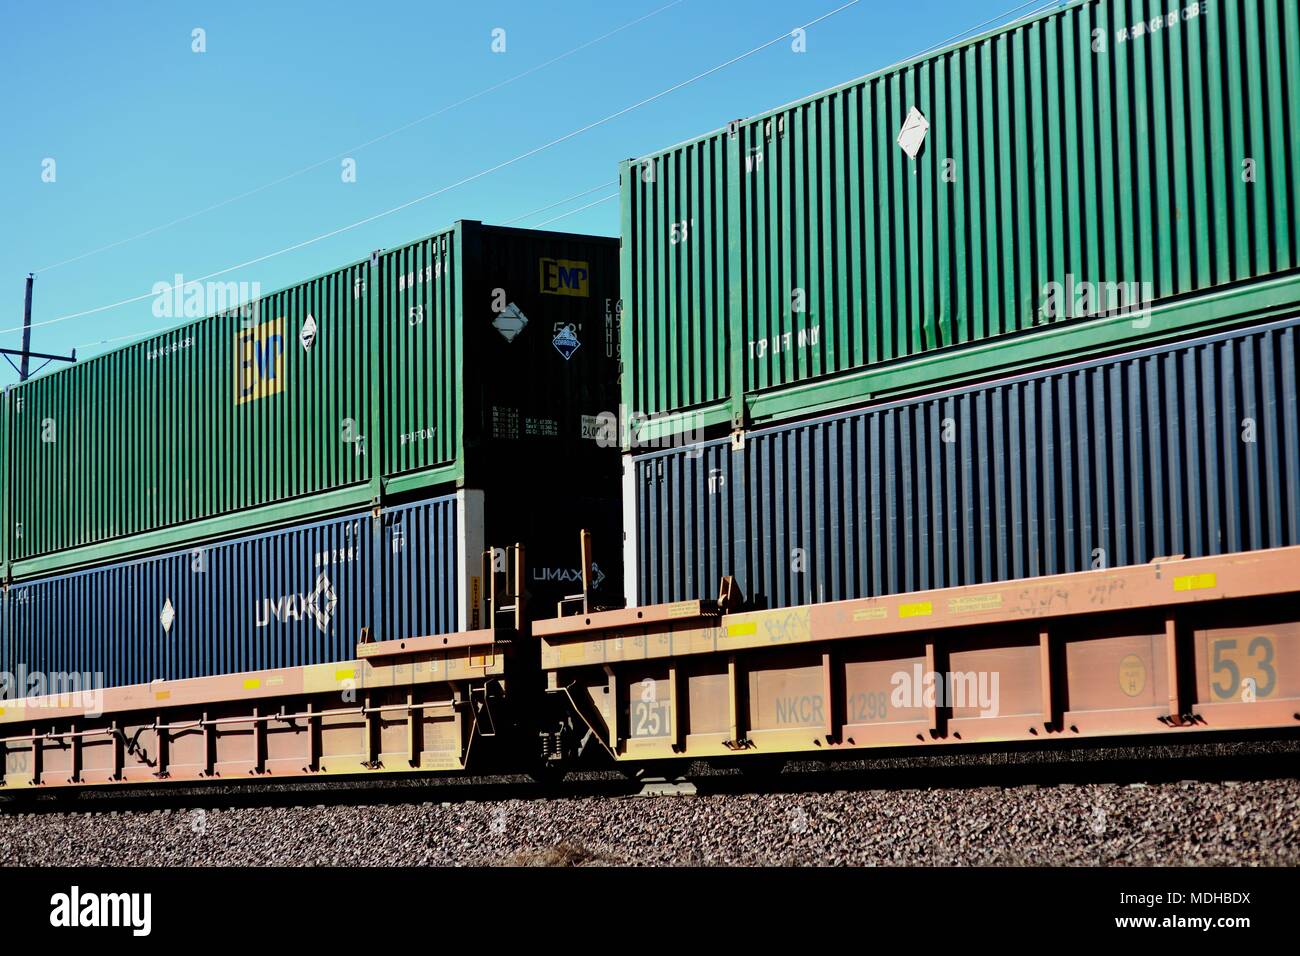 Geneva, Illinois, USA. An Union Pacific unit freight train out of Chicago traveling through Geneva, Illinois. Stock Photo